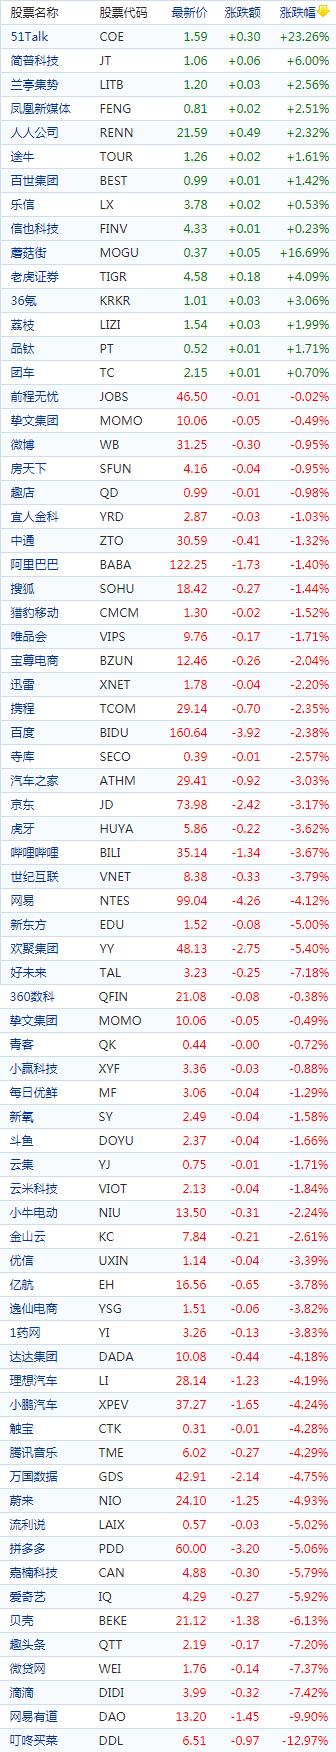 中国概念股周五收盘多数下跌 新能源车股走低51Talk涨超23%